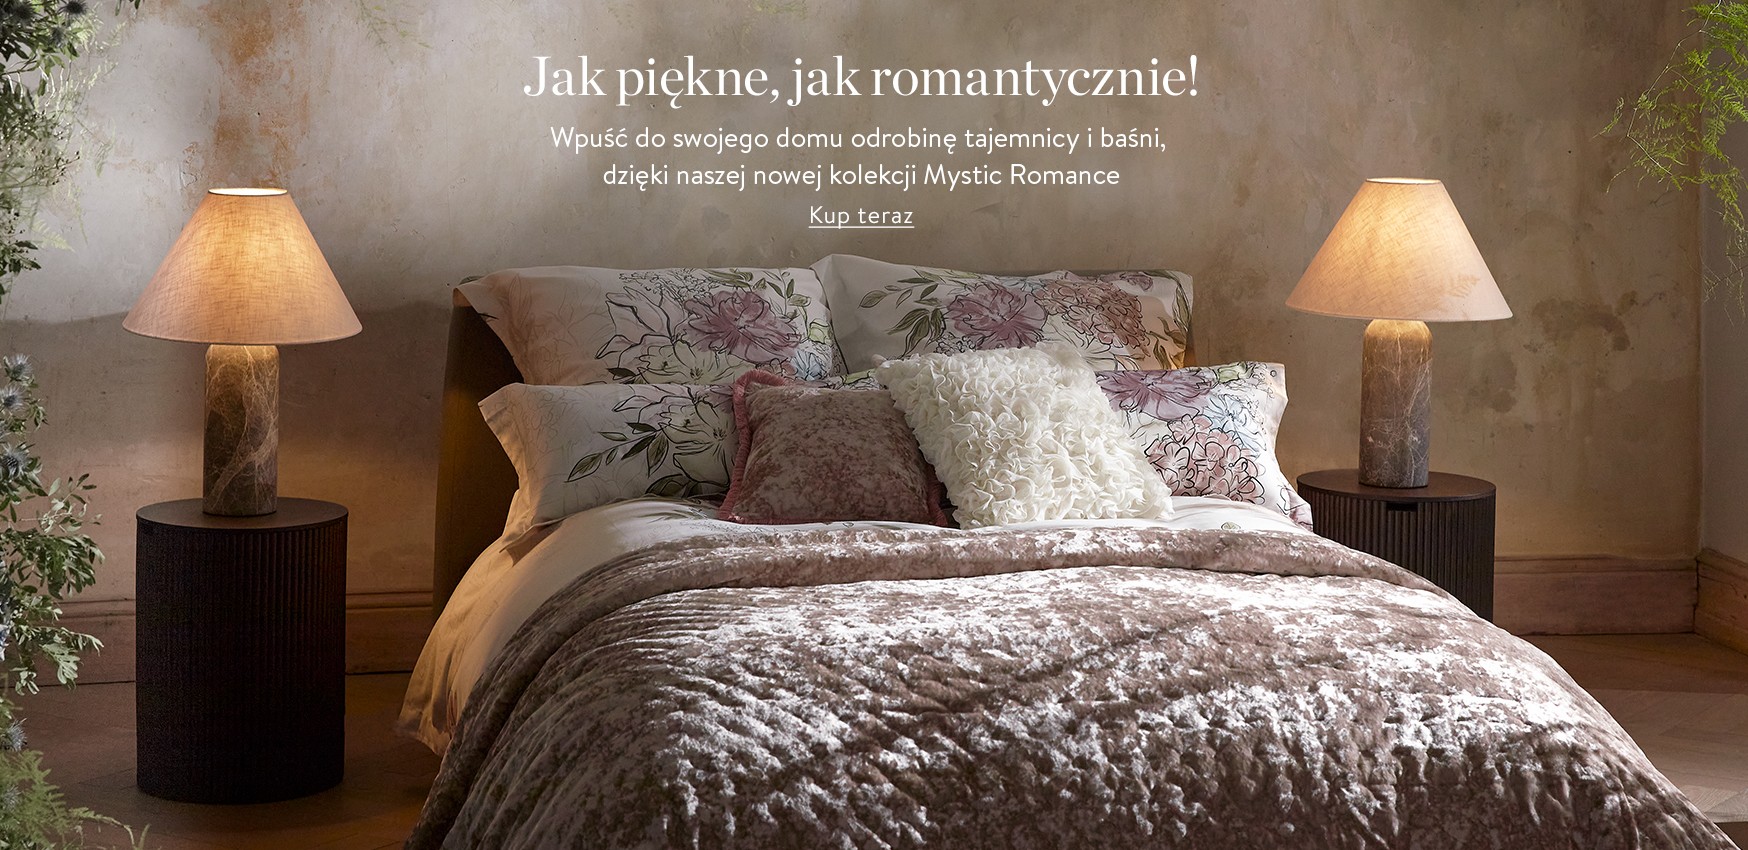 Jak piękne, jak romantycznie! Wpuść do swojego domu odrobinę tajemnicy i baśni, dzięki naszej nowej kolekcji Mystic Romance. 